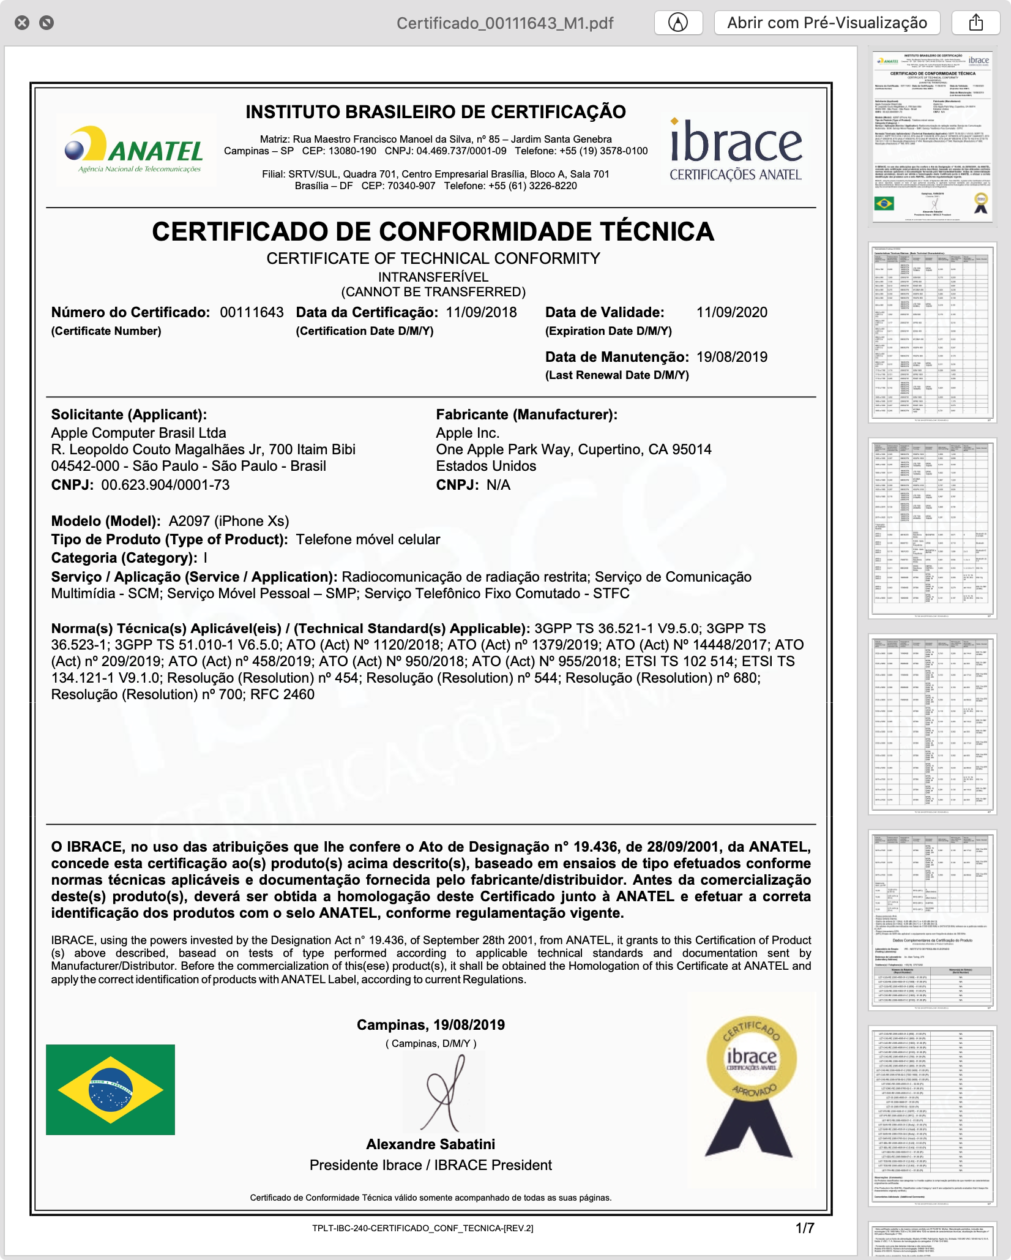 Certificado de Conformidade Técnica do iPhone XS